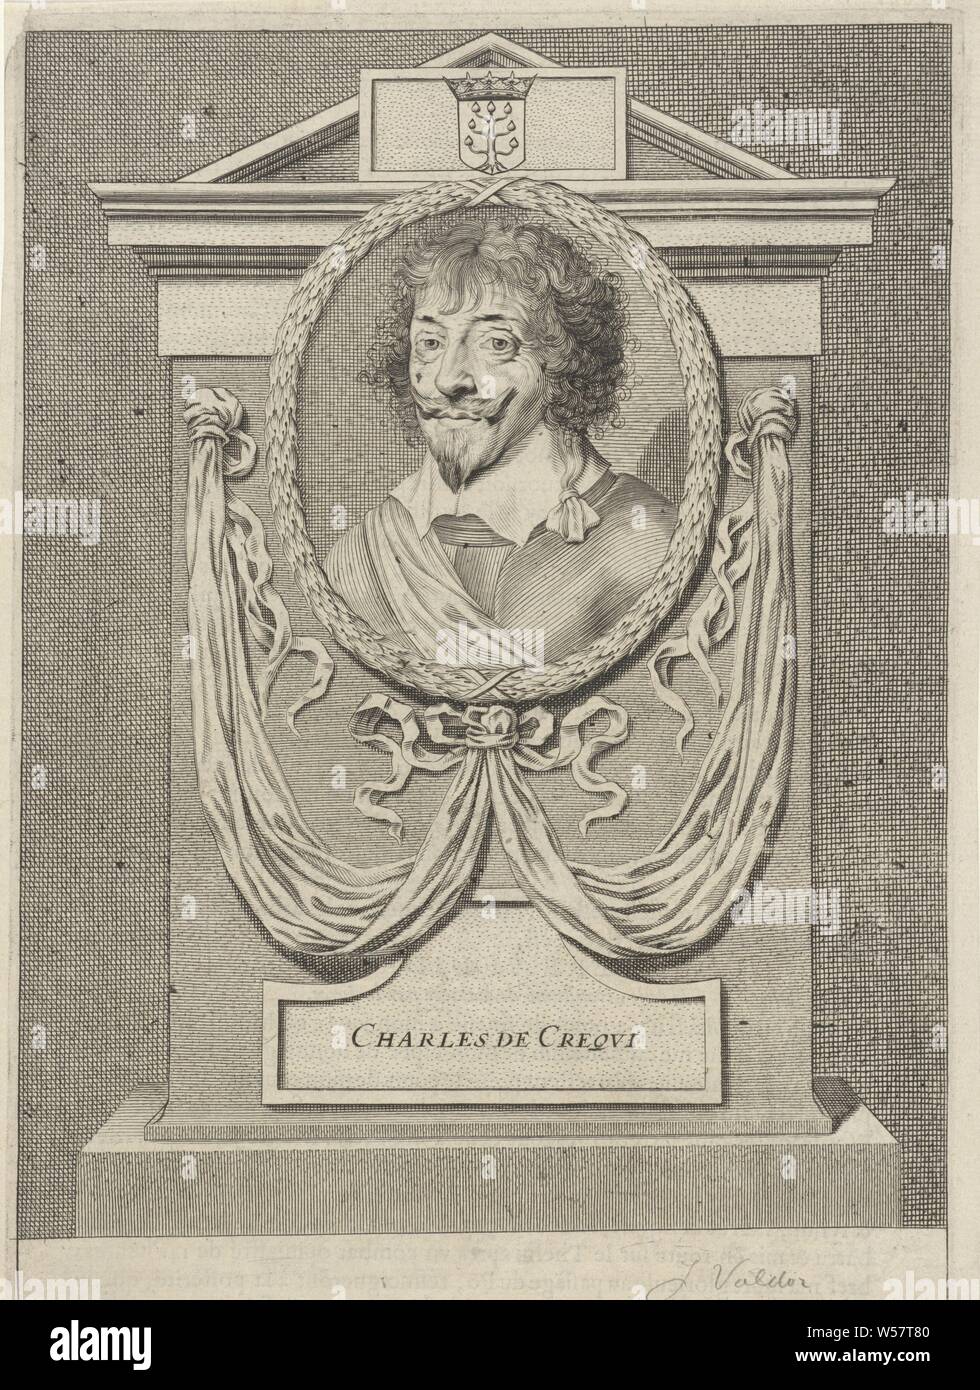 Porträt von Charles de Crequi Porträts der Könige, Fürsten und Generäle (Titel der Serie), Johannes Valdor (II), Paris, 1649, Papier, Gravur, H 270 mm x B 197 mm Stockfoto